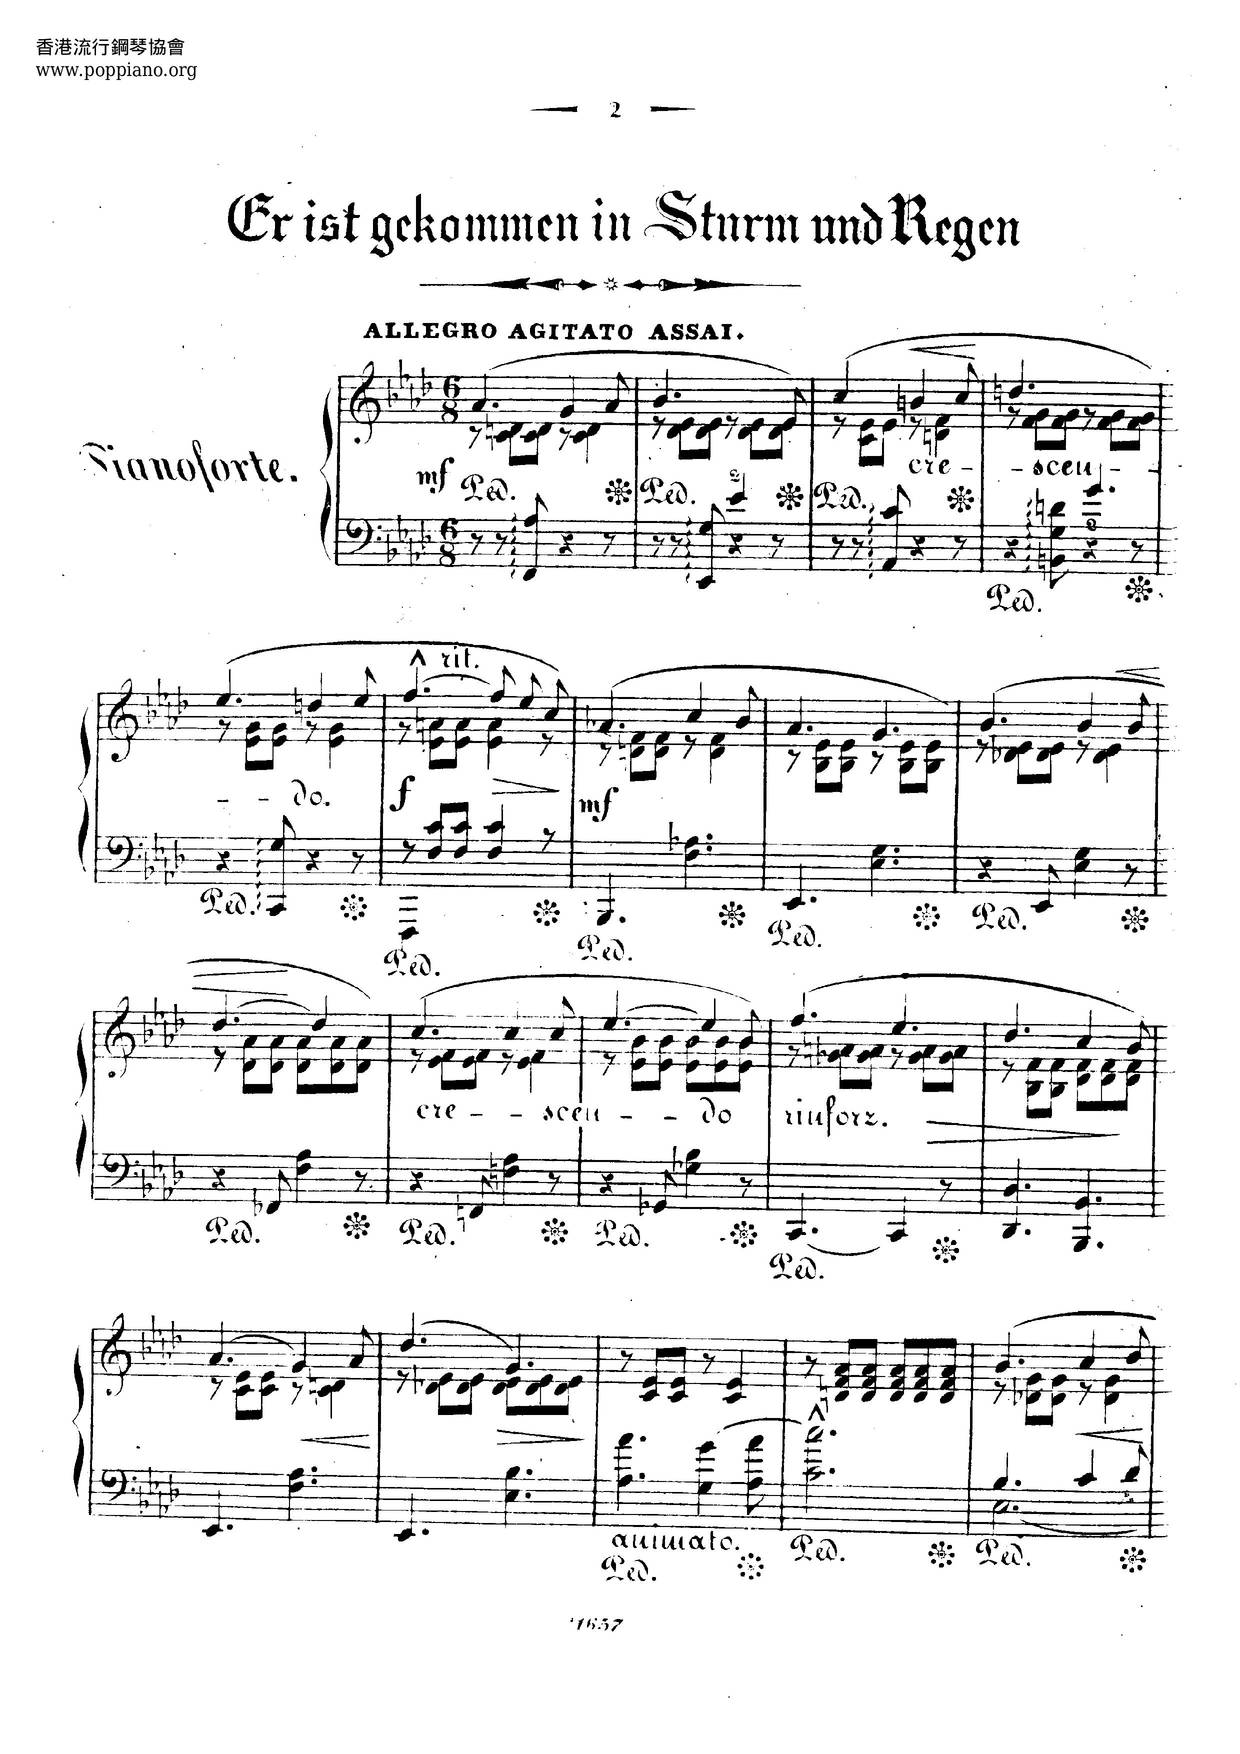 Er Ist Gekommen In Sturm Und Regen, Lied Von Robert Franz, S.488 Score